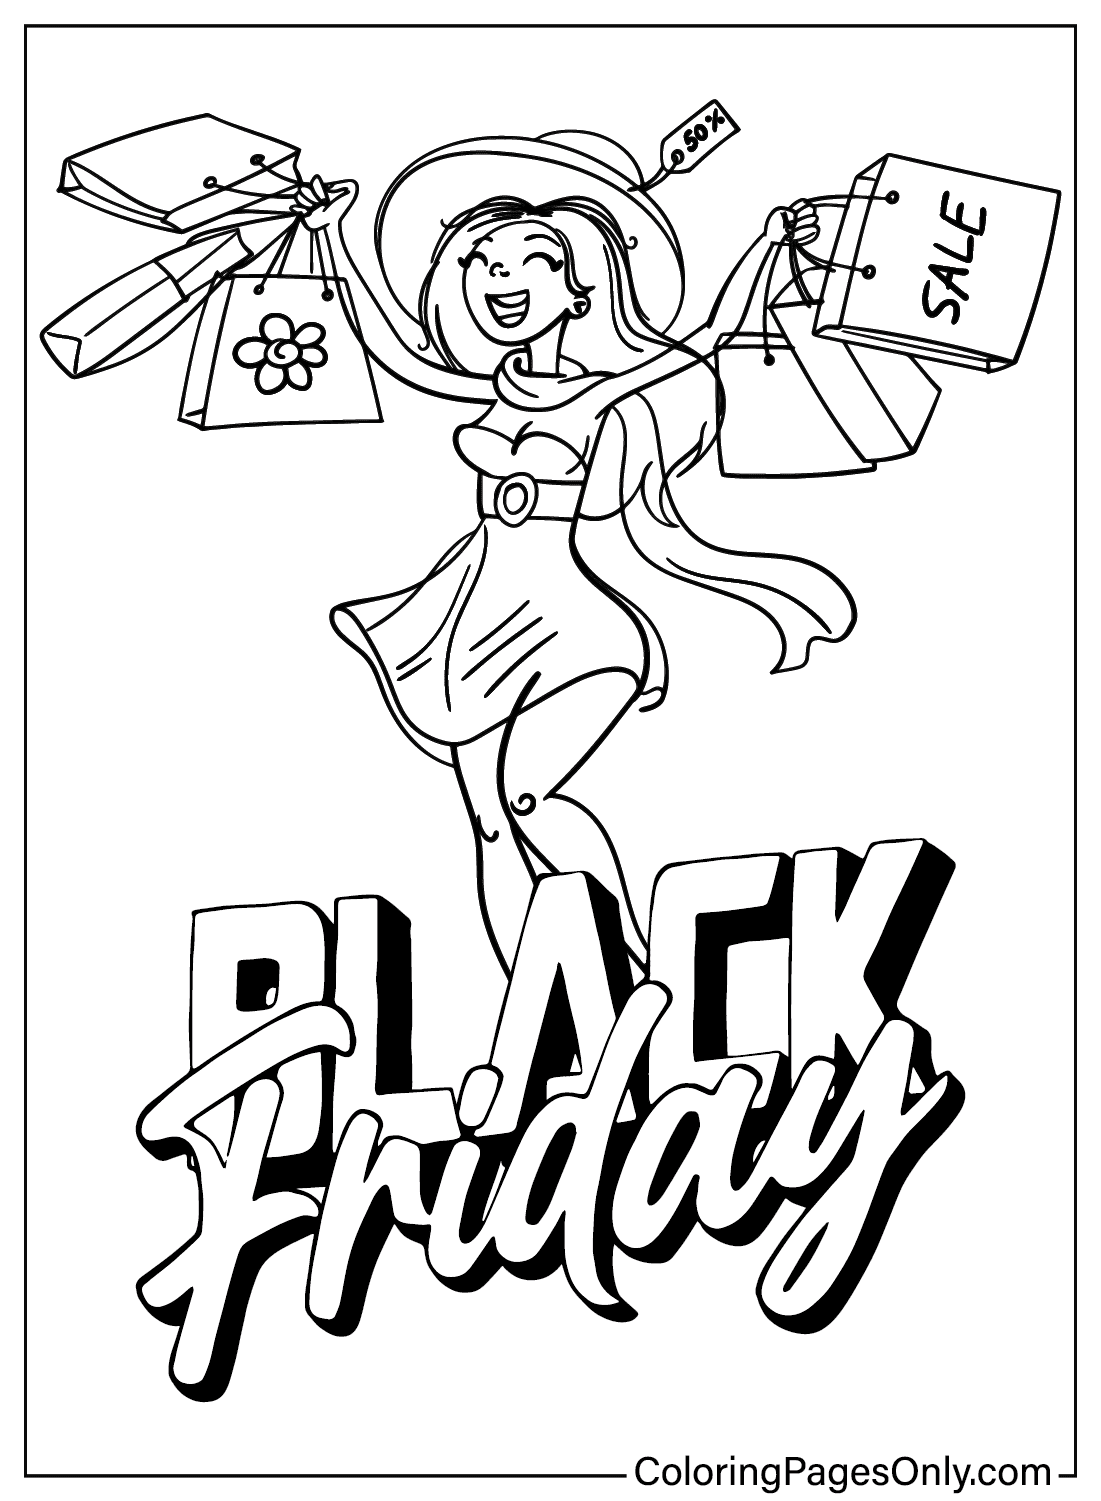 Black Friday-Malseite für Erwachsene vom Black Friday